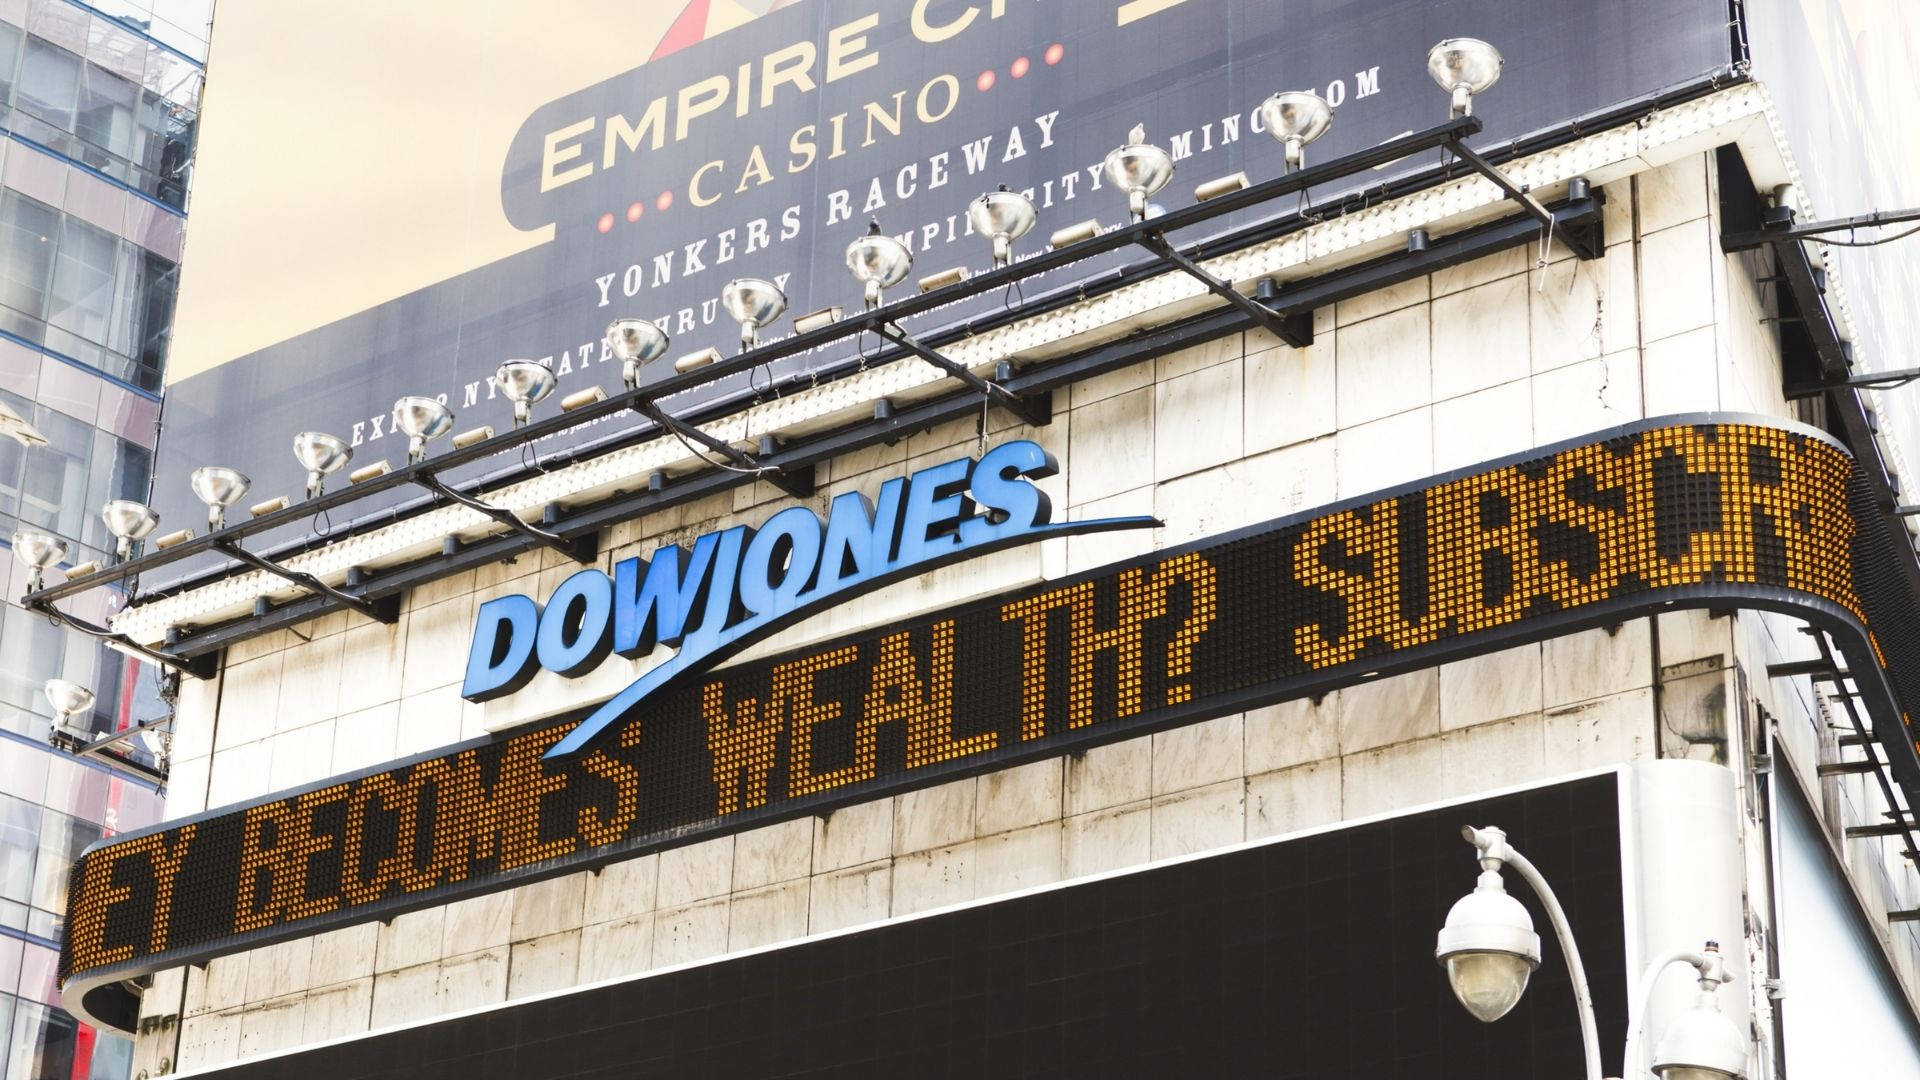 Dow Jones On Building Background